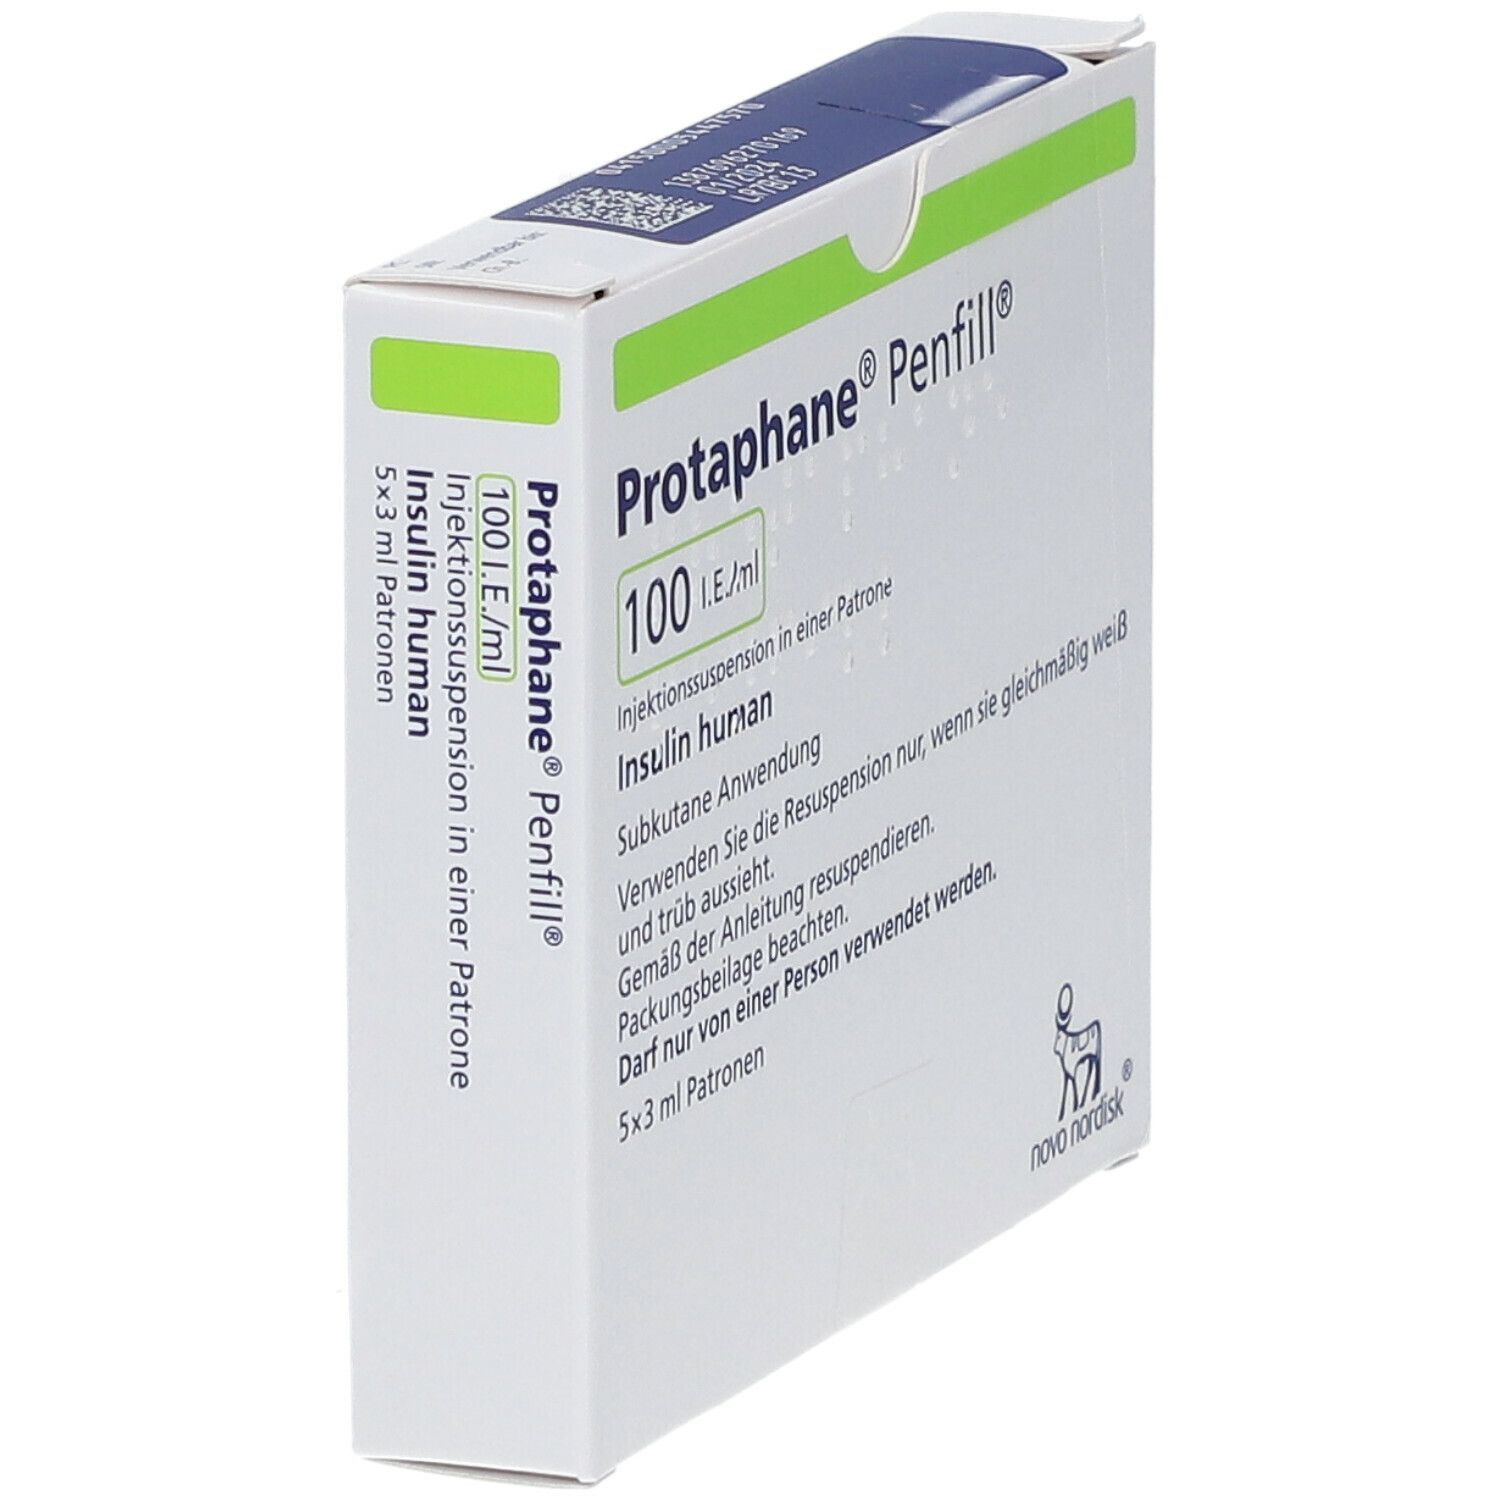 Protaphane® Penfill® 100 I.E./ml